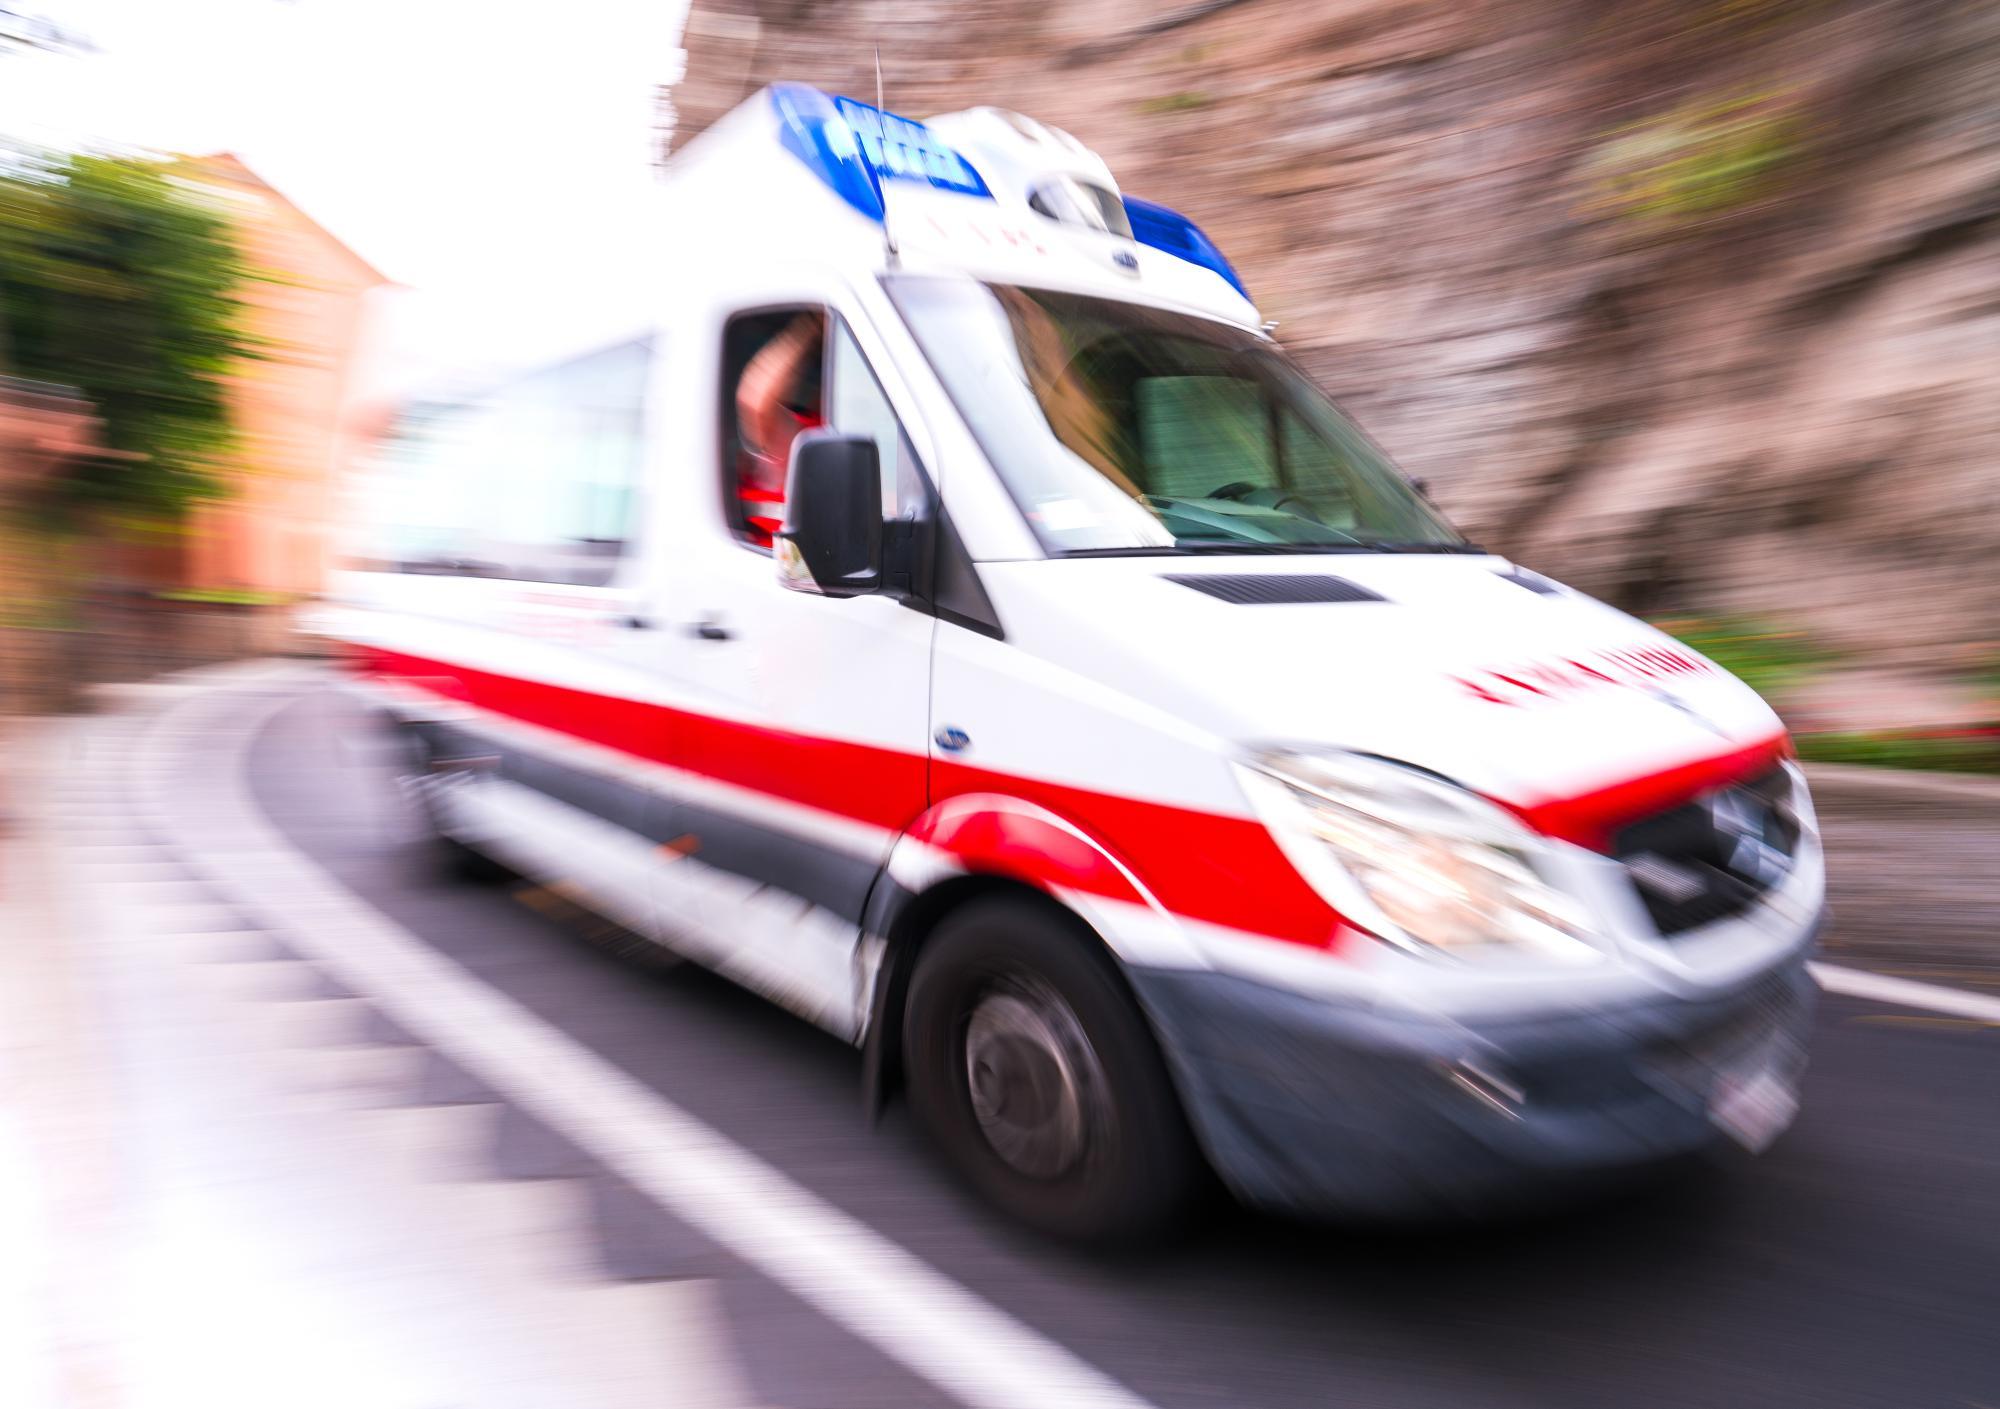 Zwischen Seilwinde und Palette eingeklemmt: 73-Jähriger starb bei Unfall in Tirol